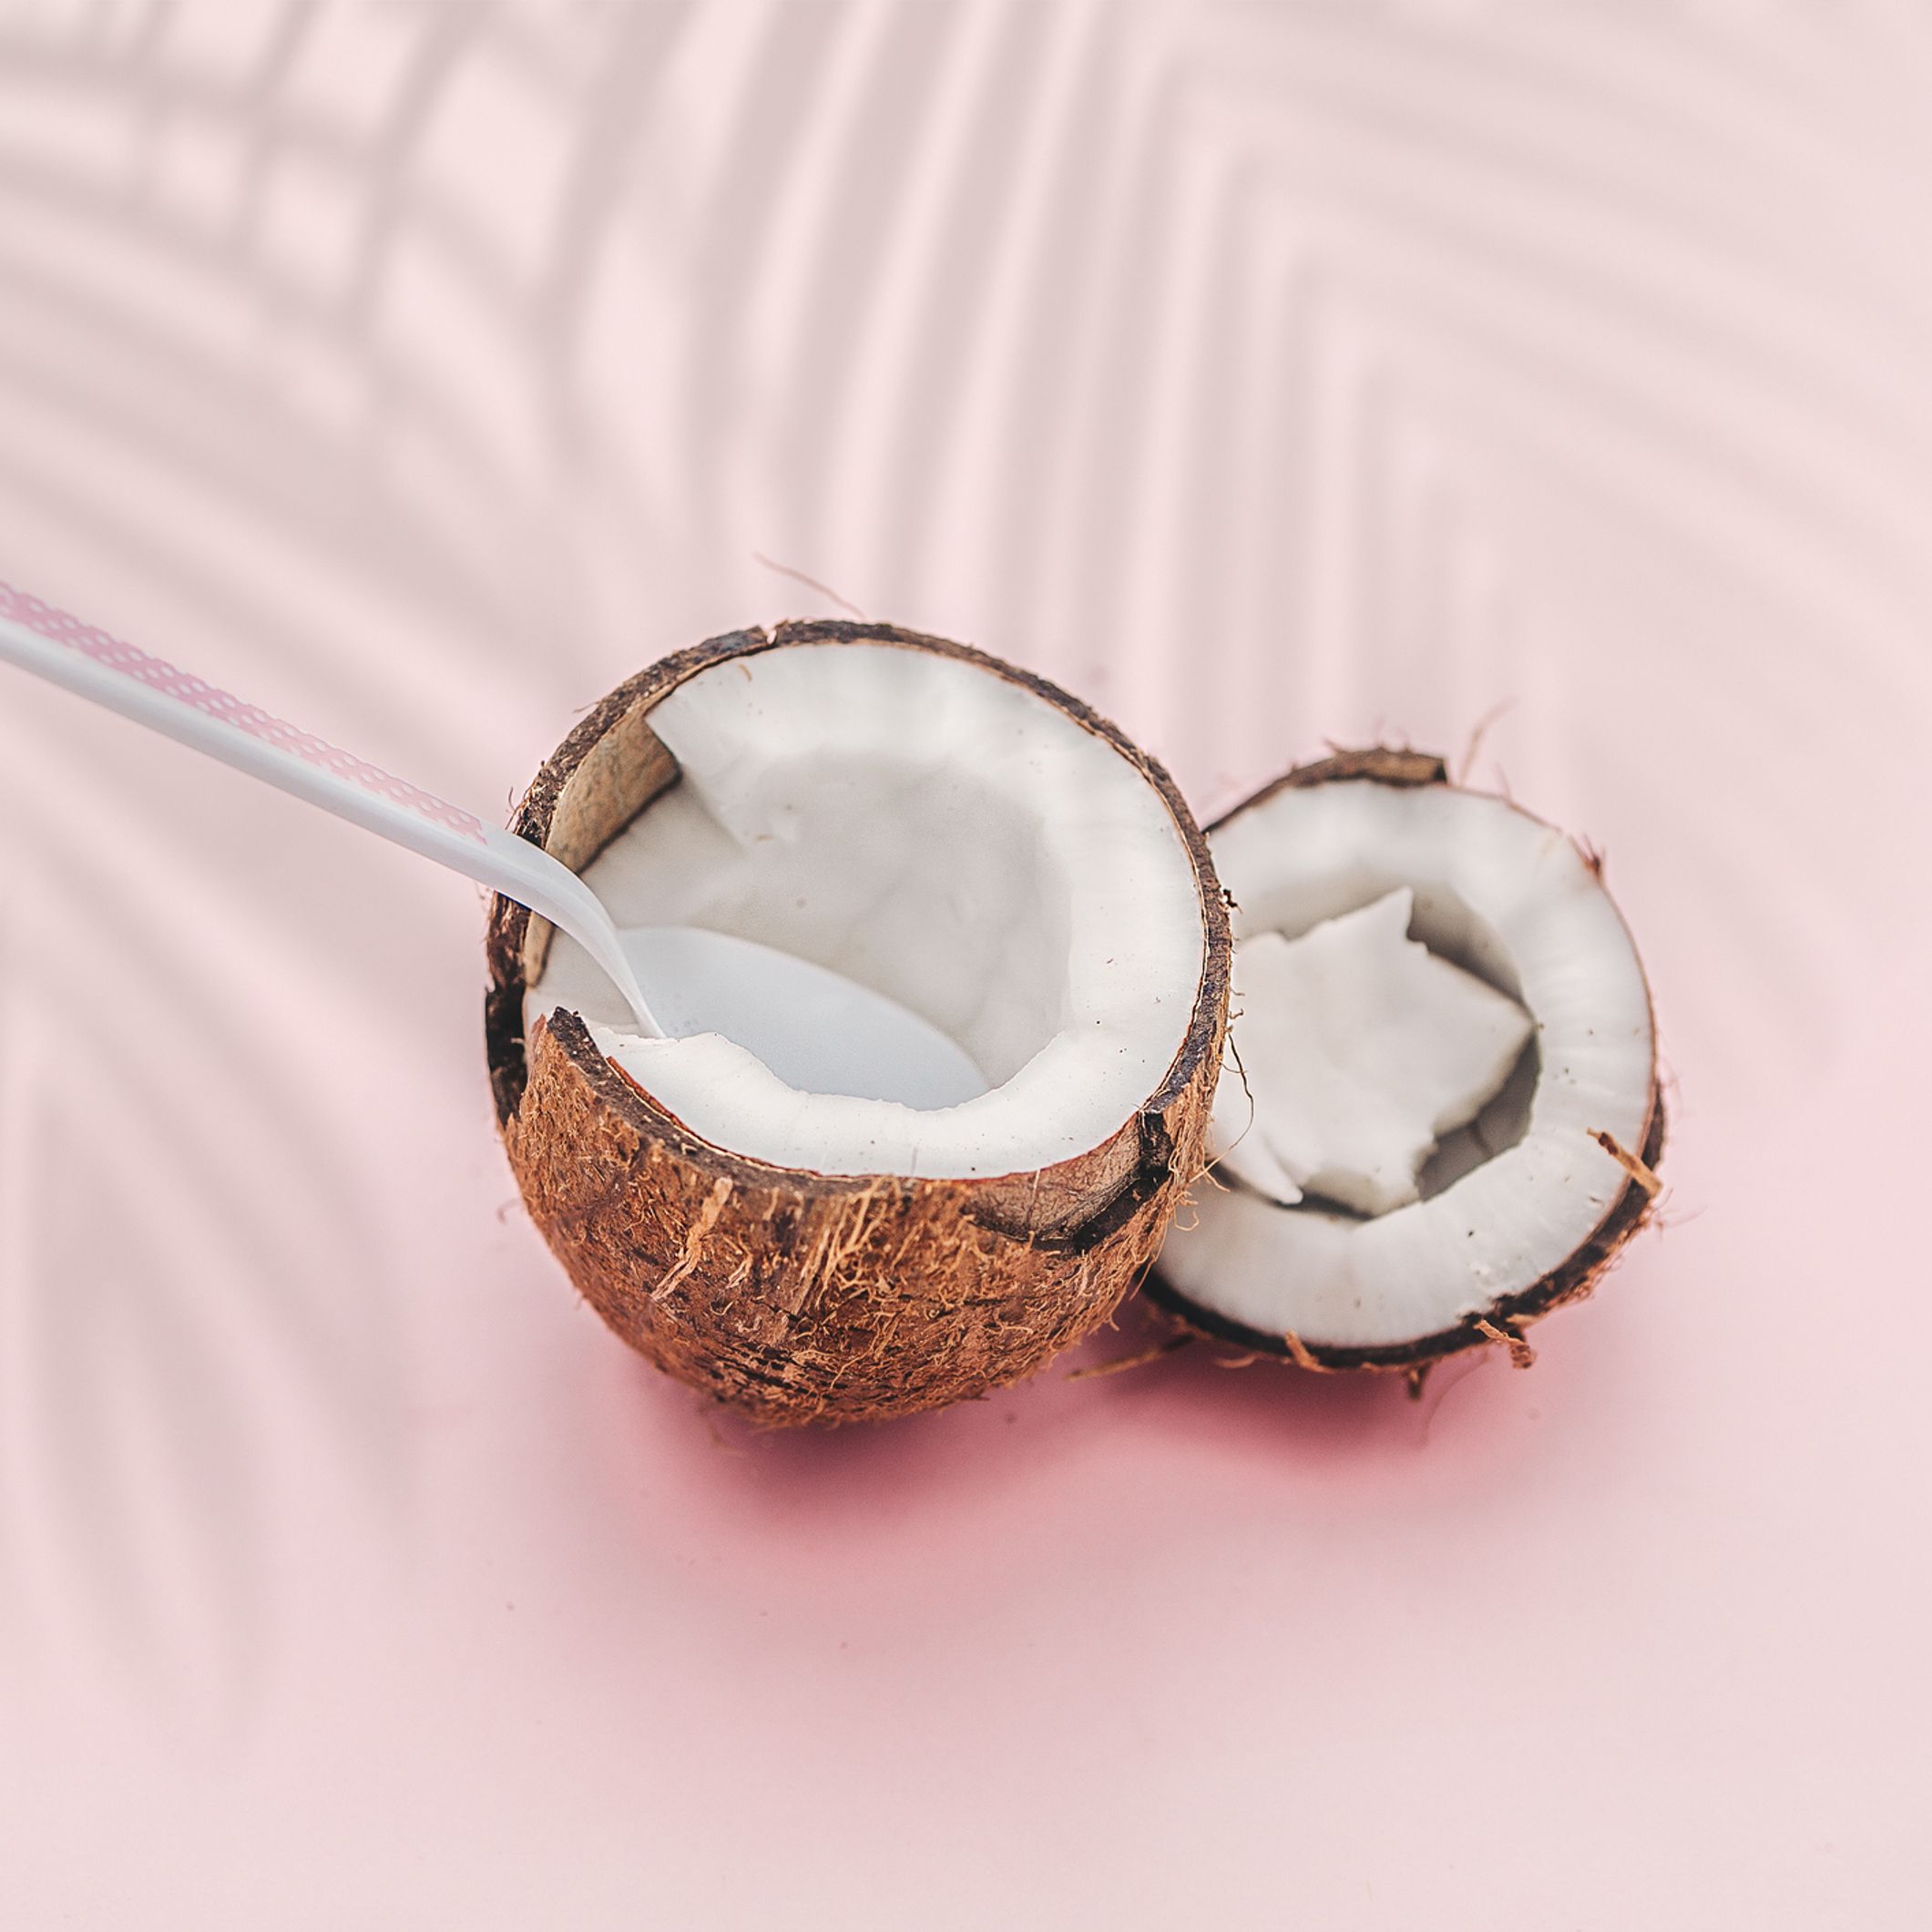 Huile essentielle noix de coco, vertu et utilisation